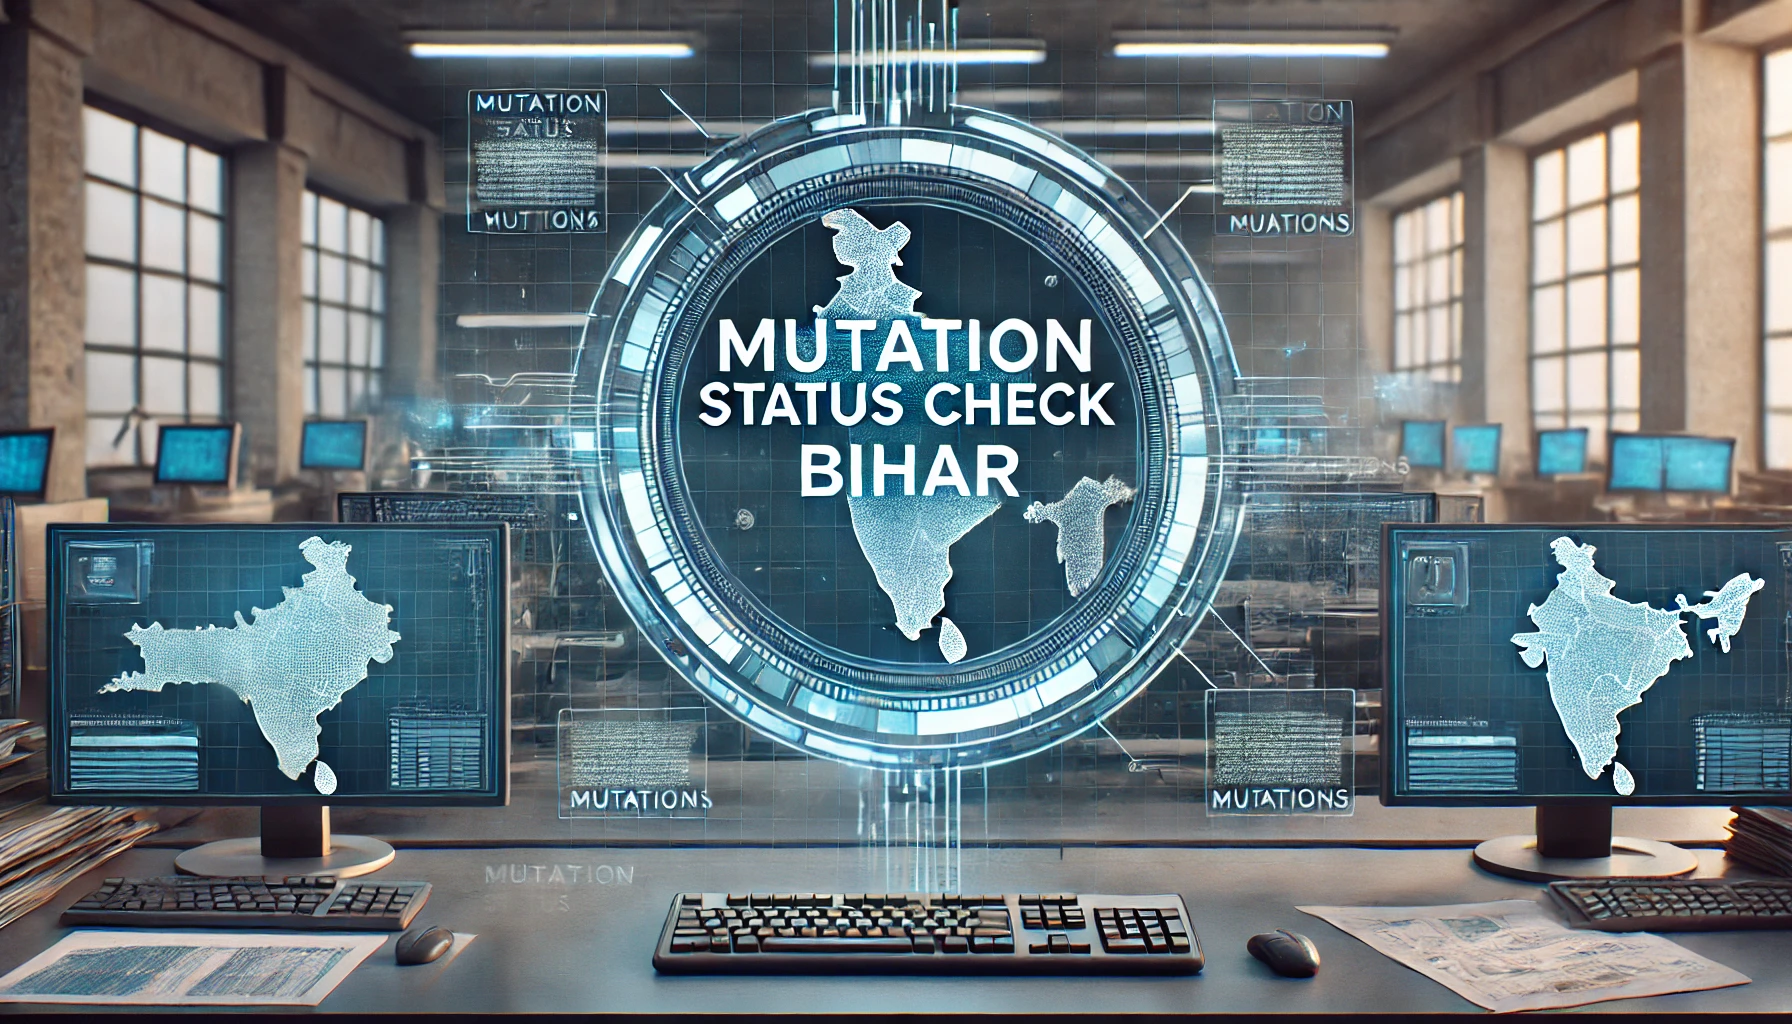 Mutation Status Check Bihar